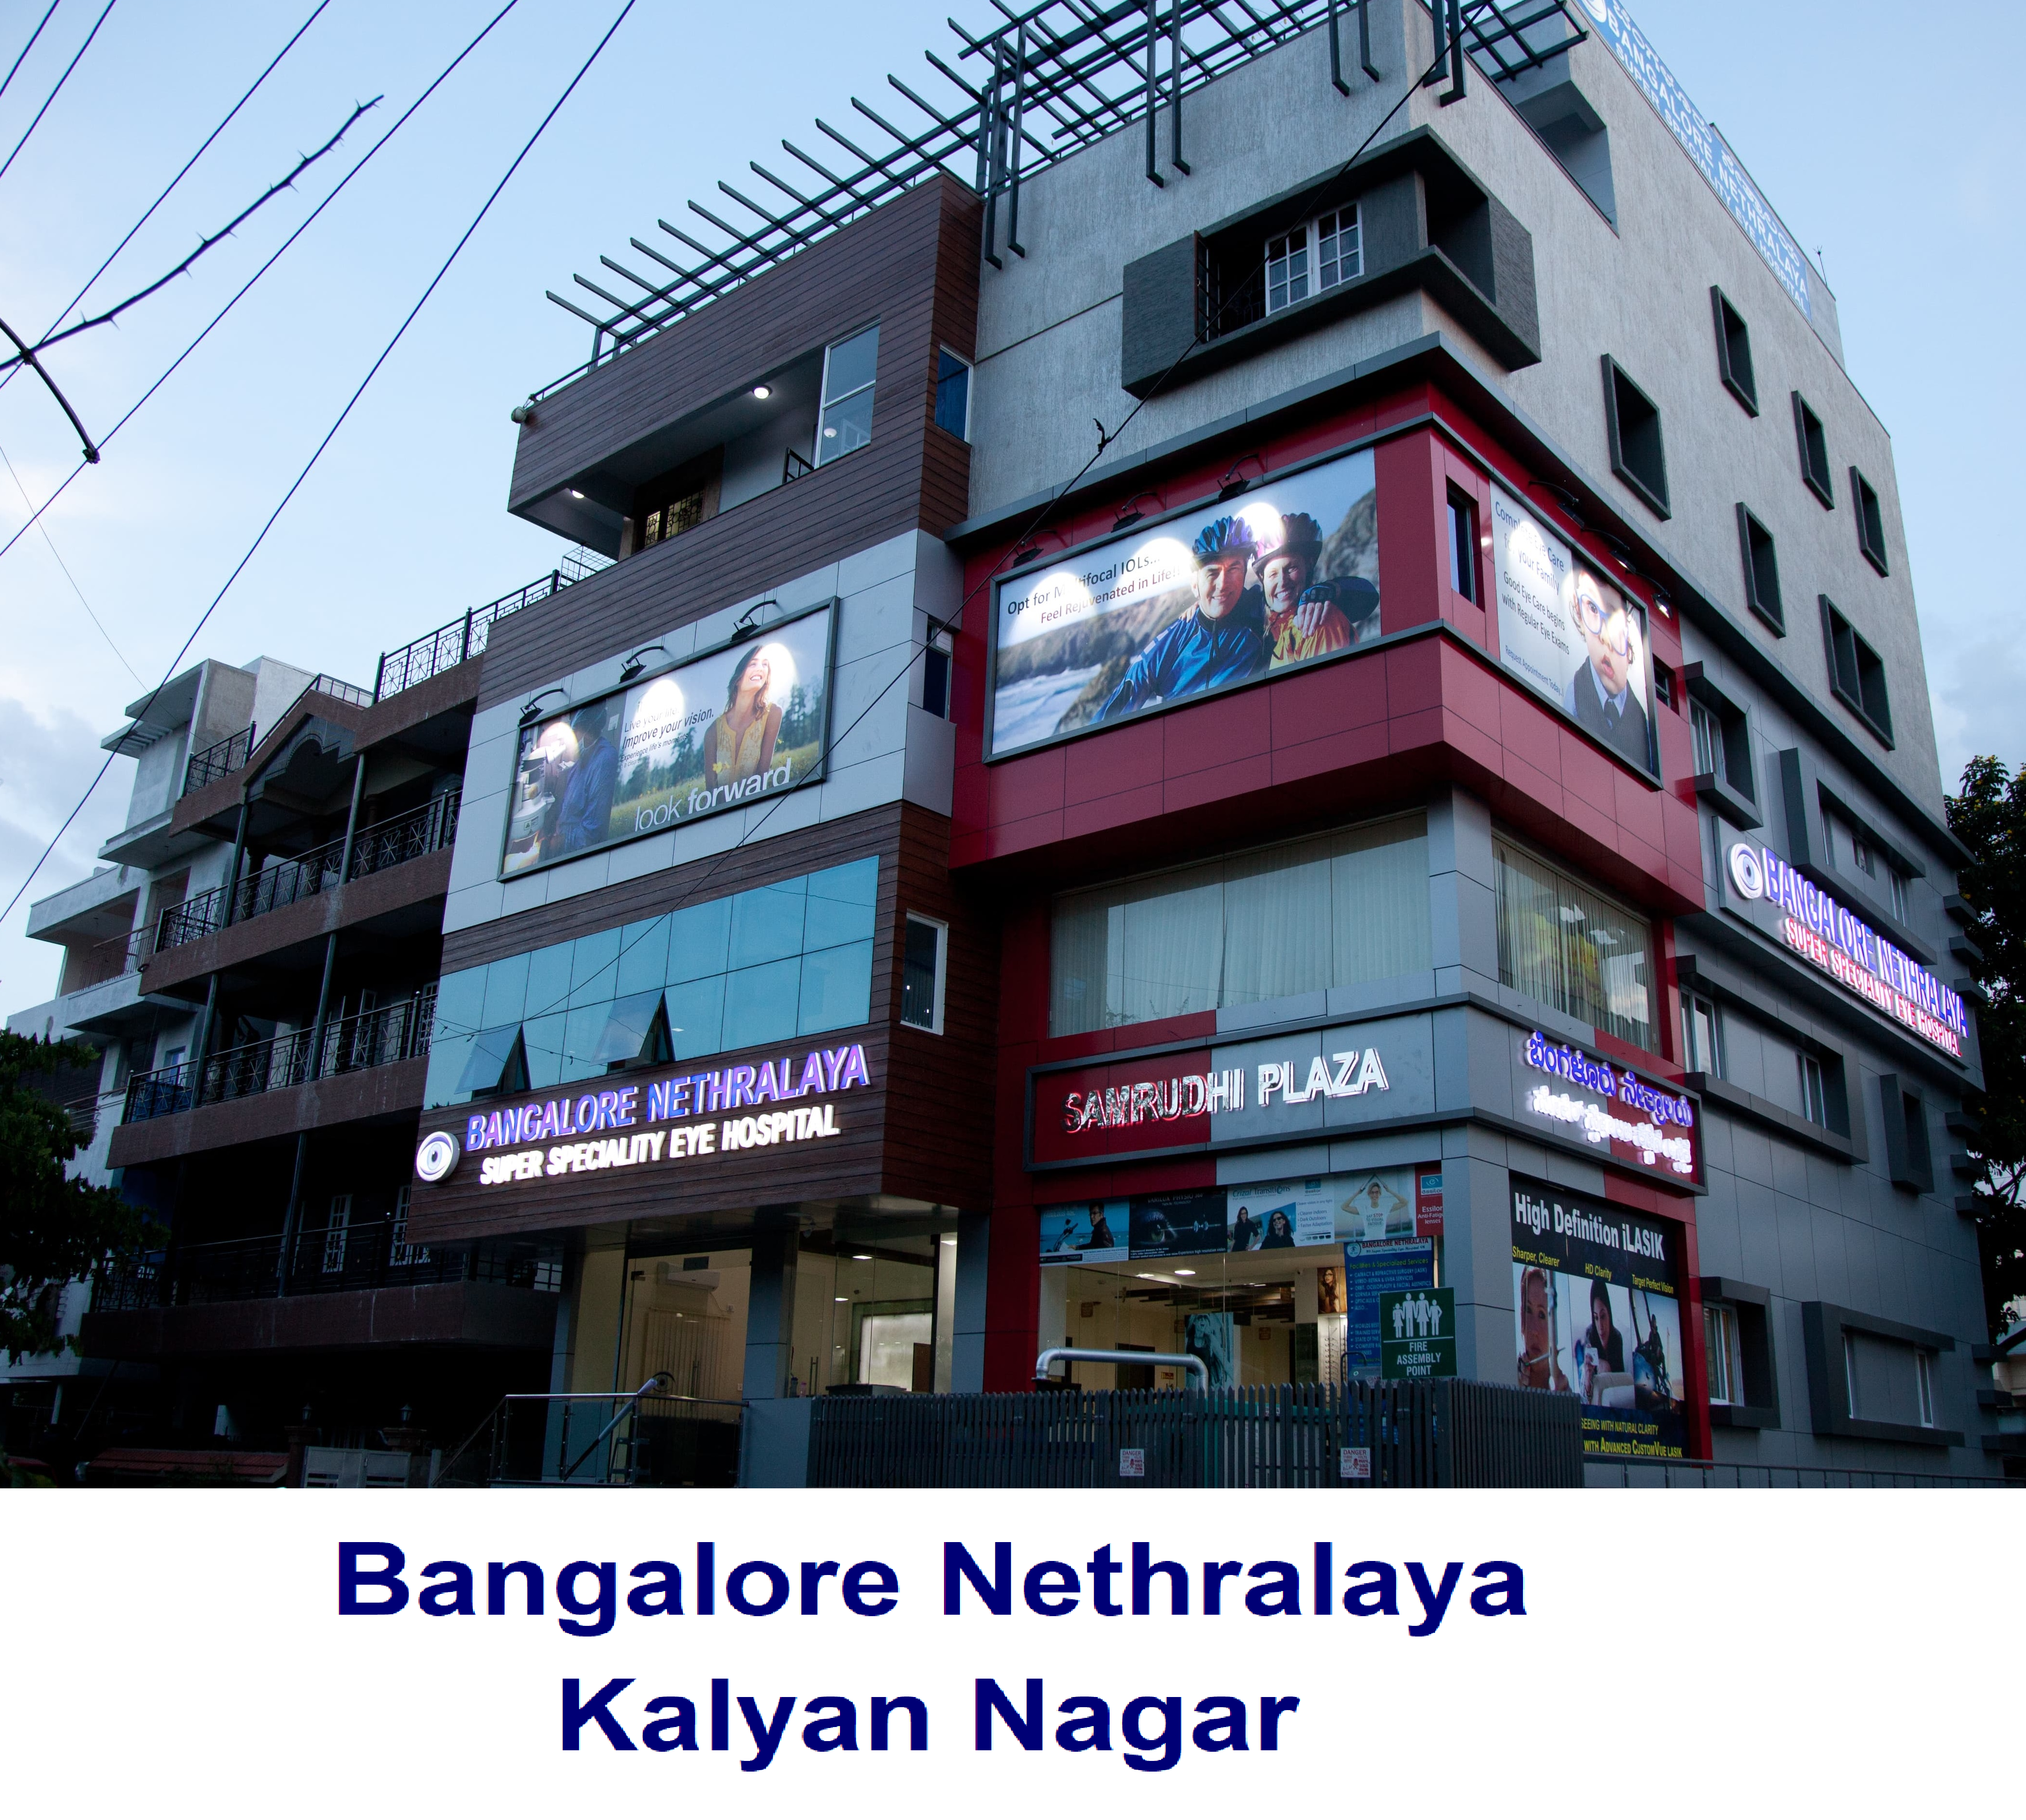 Kalyan Nagar